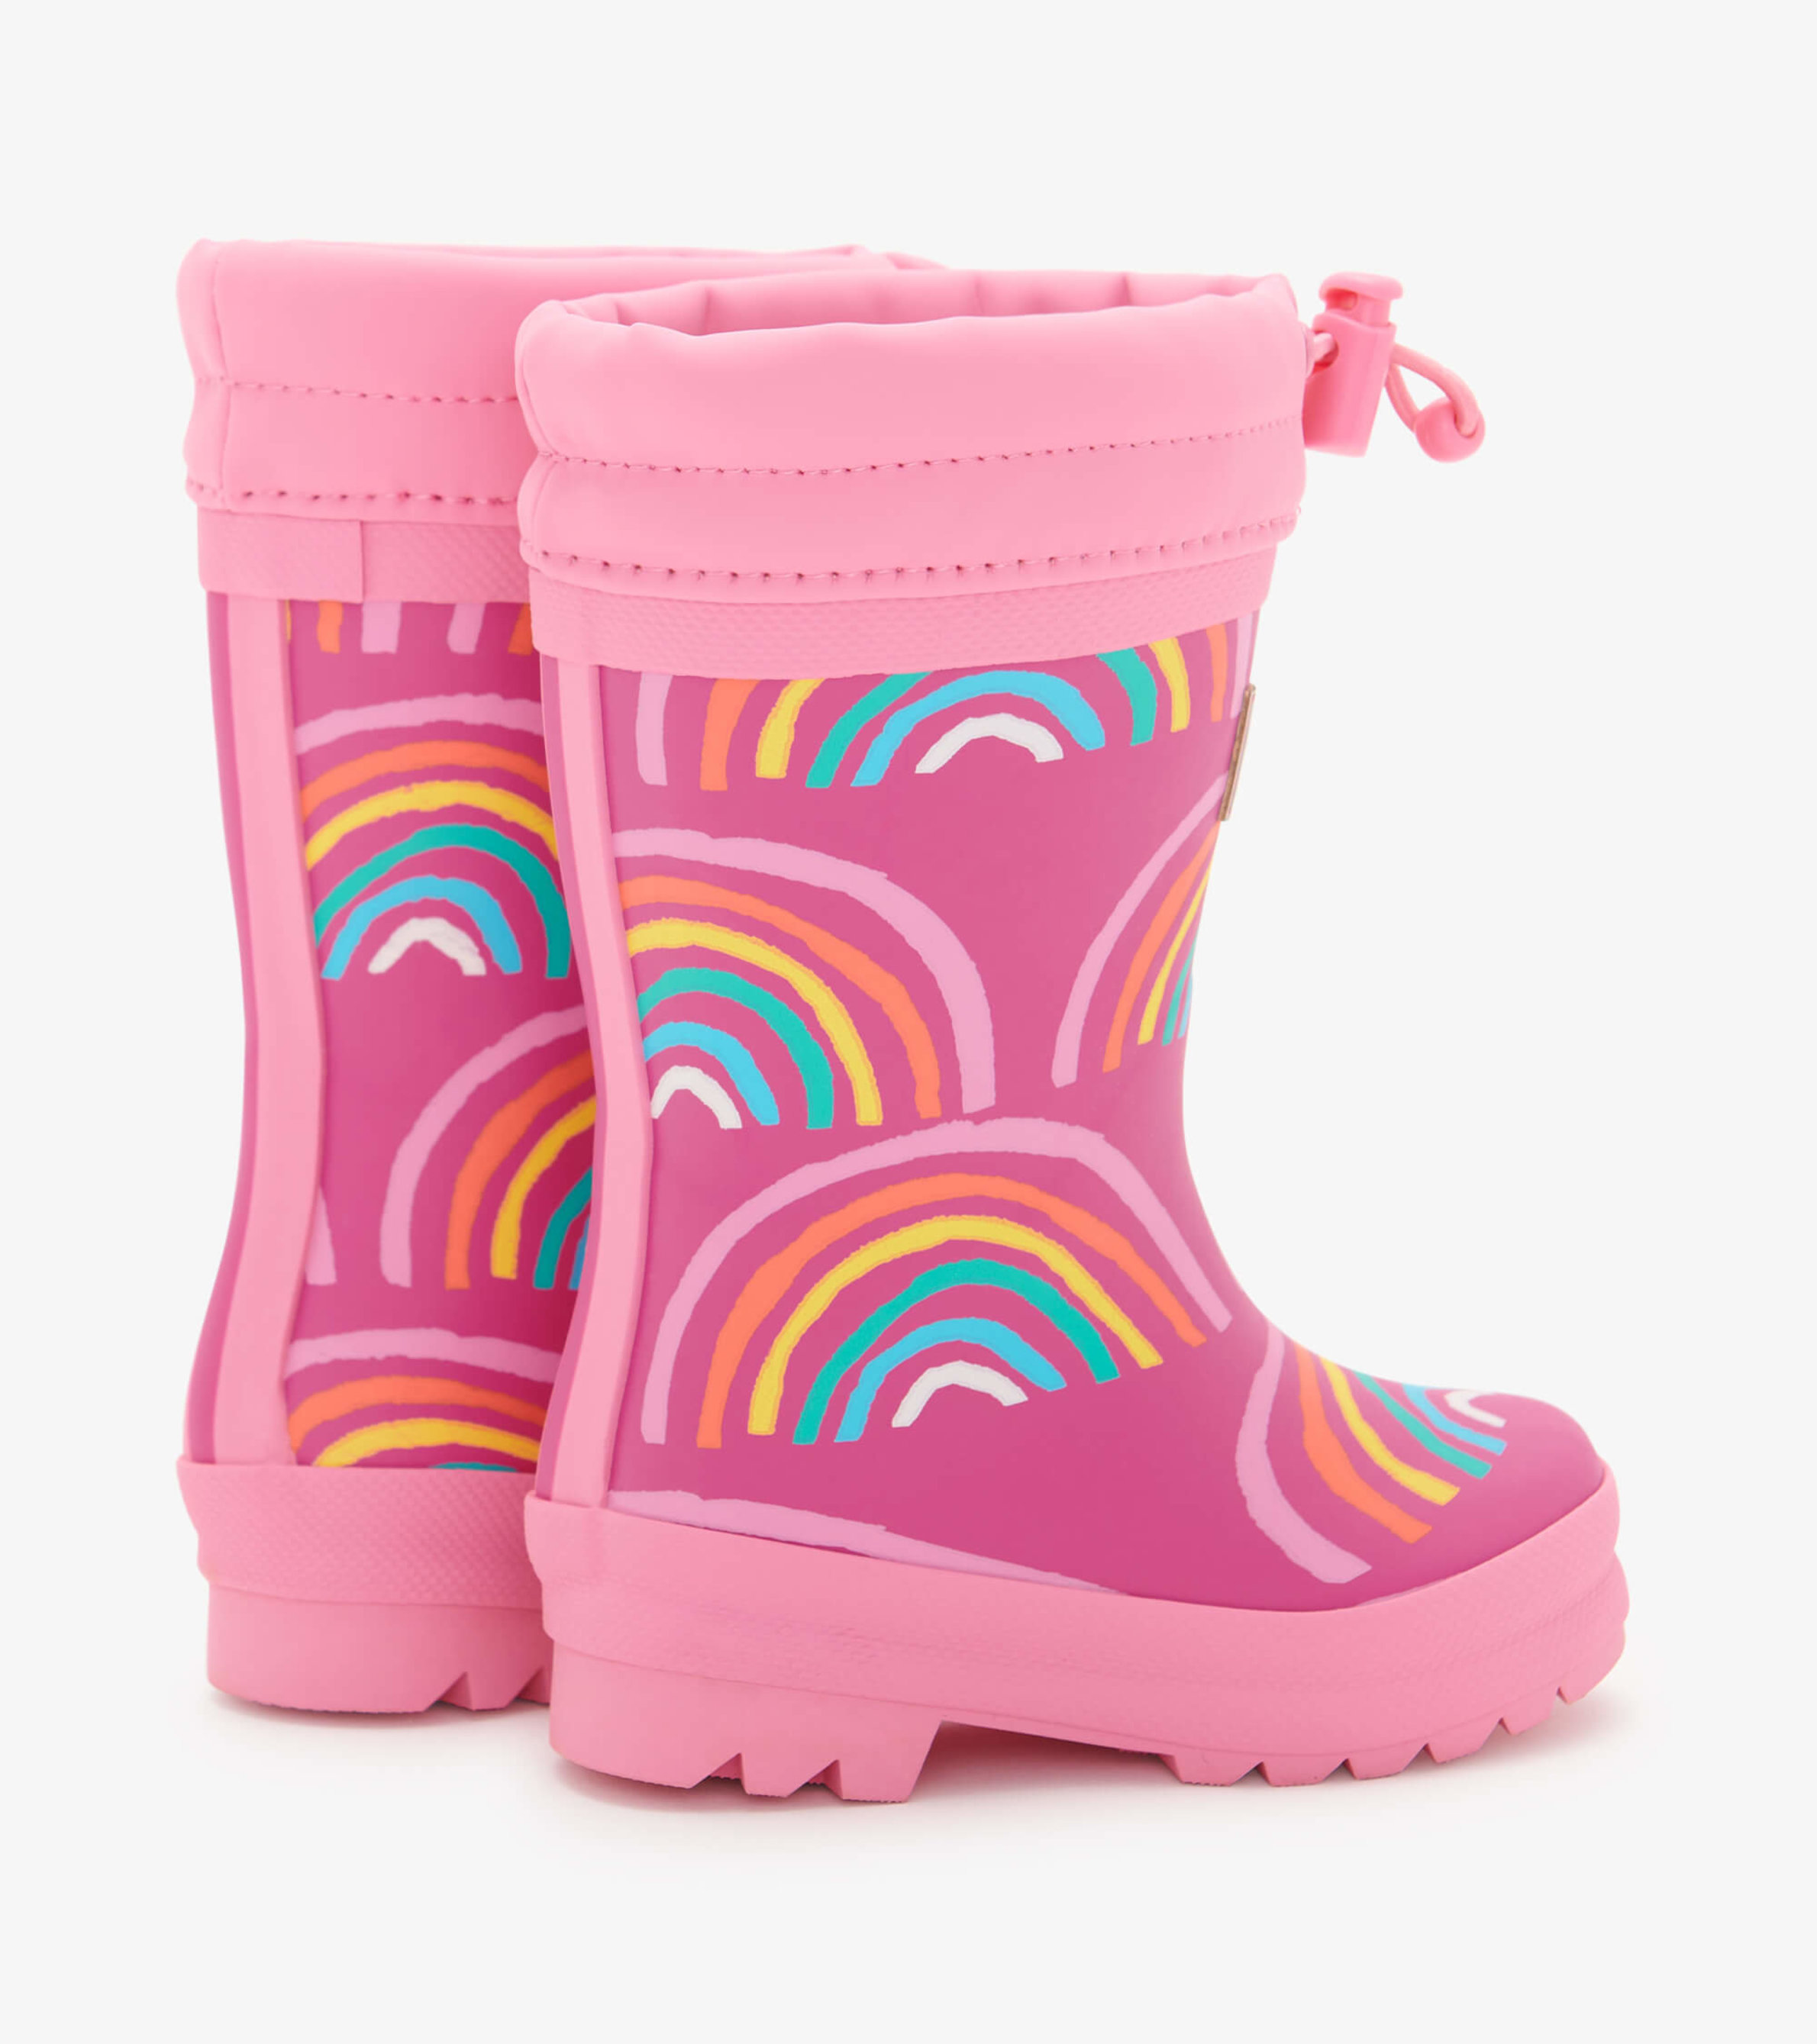 Rainy Rainbows Sherpa Lined Baby Rain Boots - Hatley US